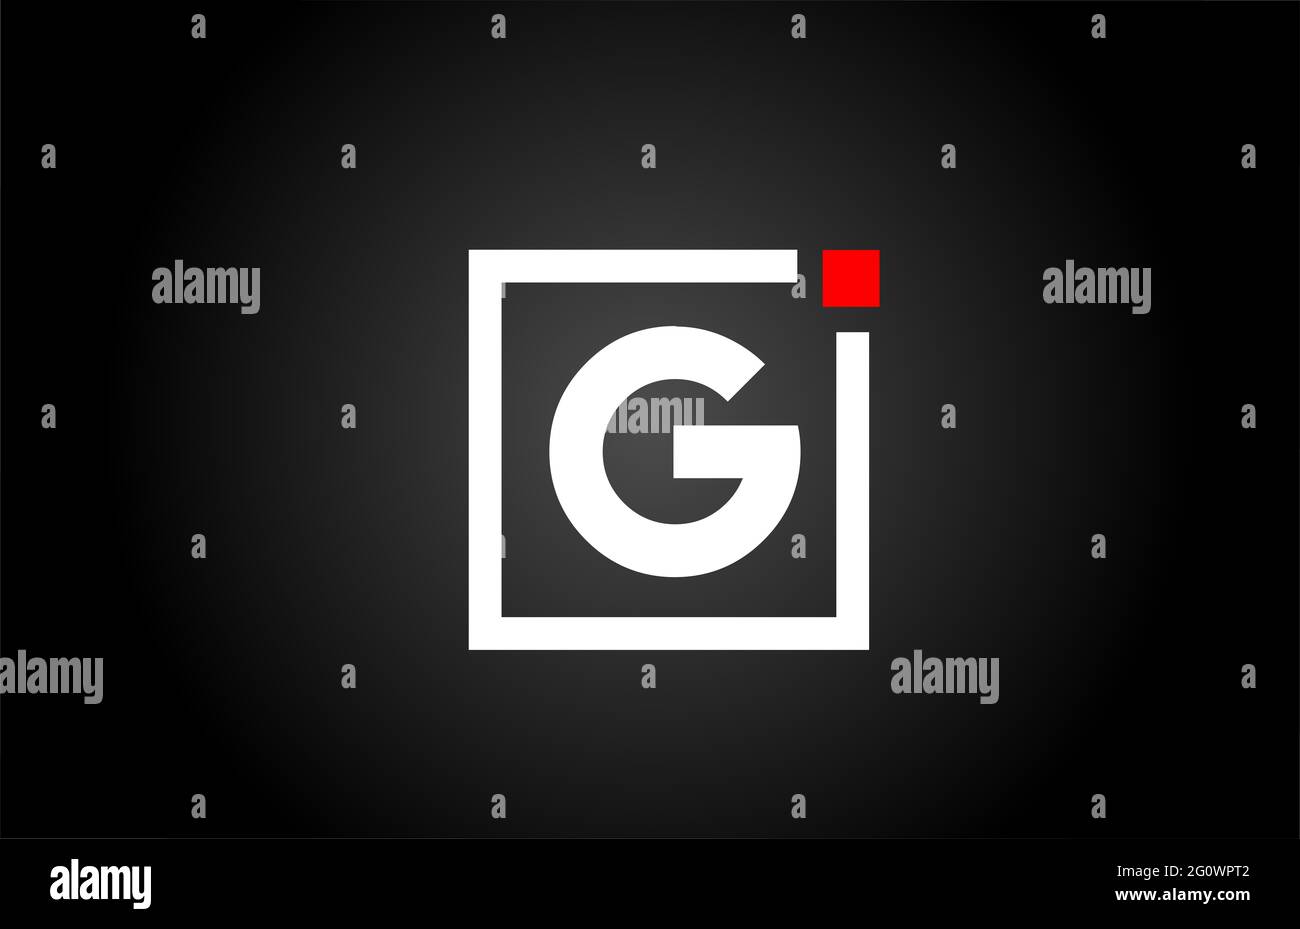 Logo dell'icona lettera dell'alfabeto G in bianco e nero. Design aziendale e aziendale con punto quadrato e rosso. Modello di identità aziendale creativa Foto Stock